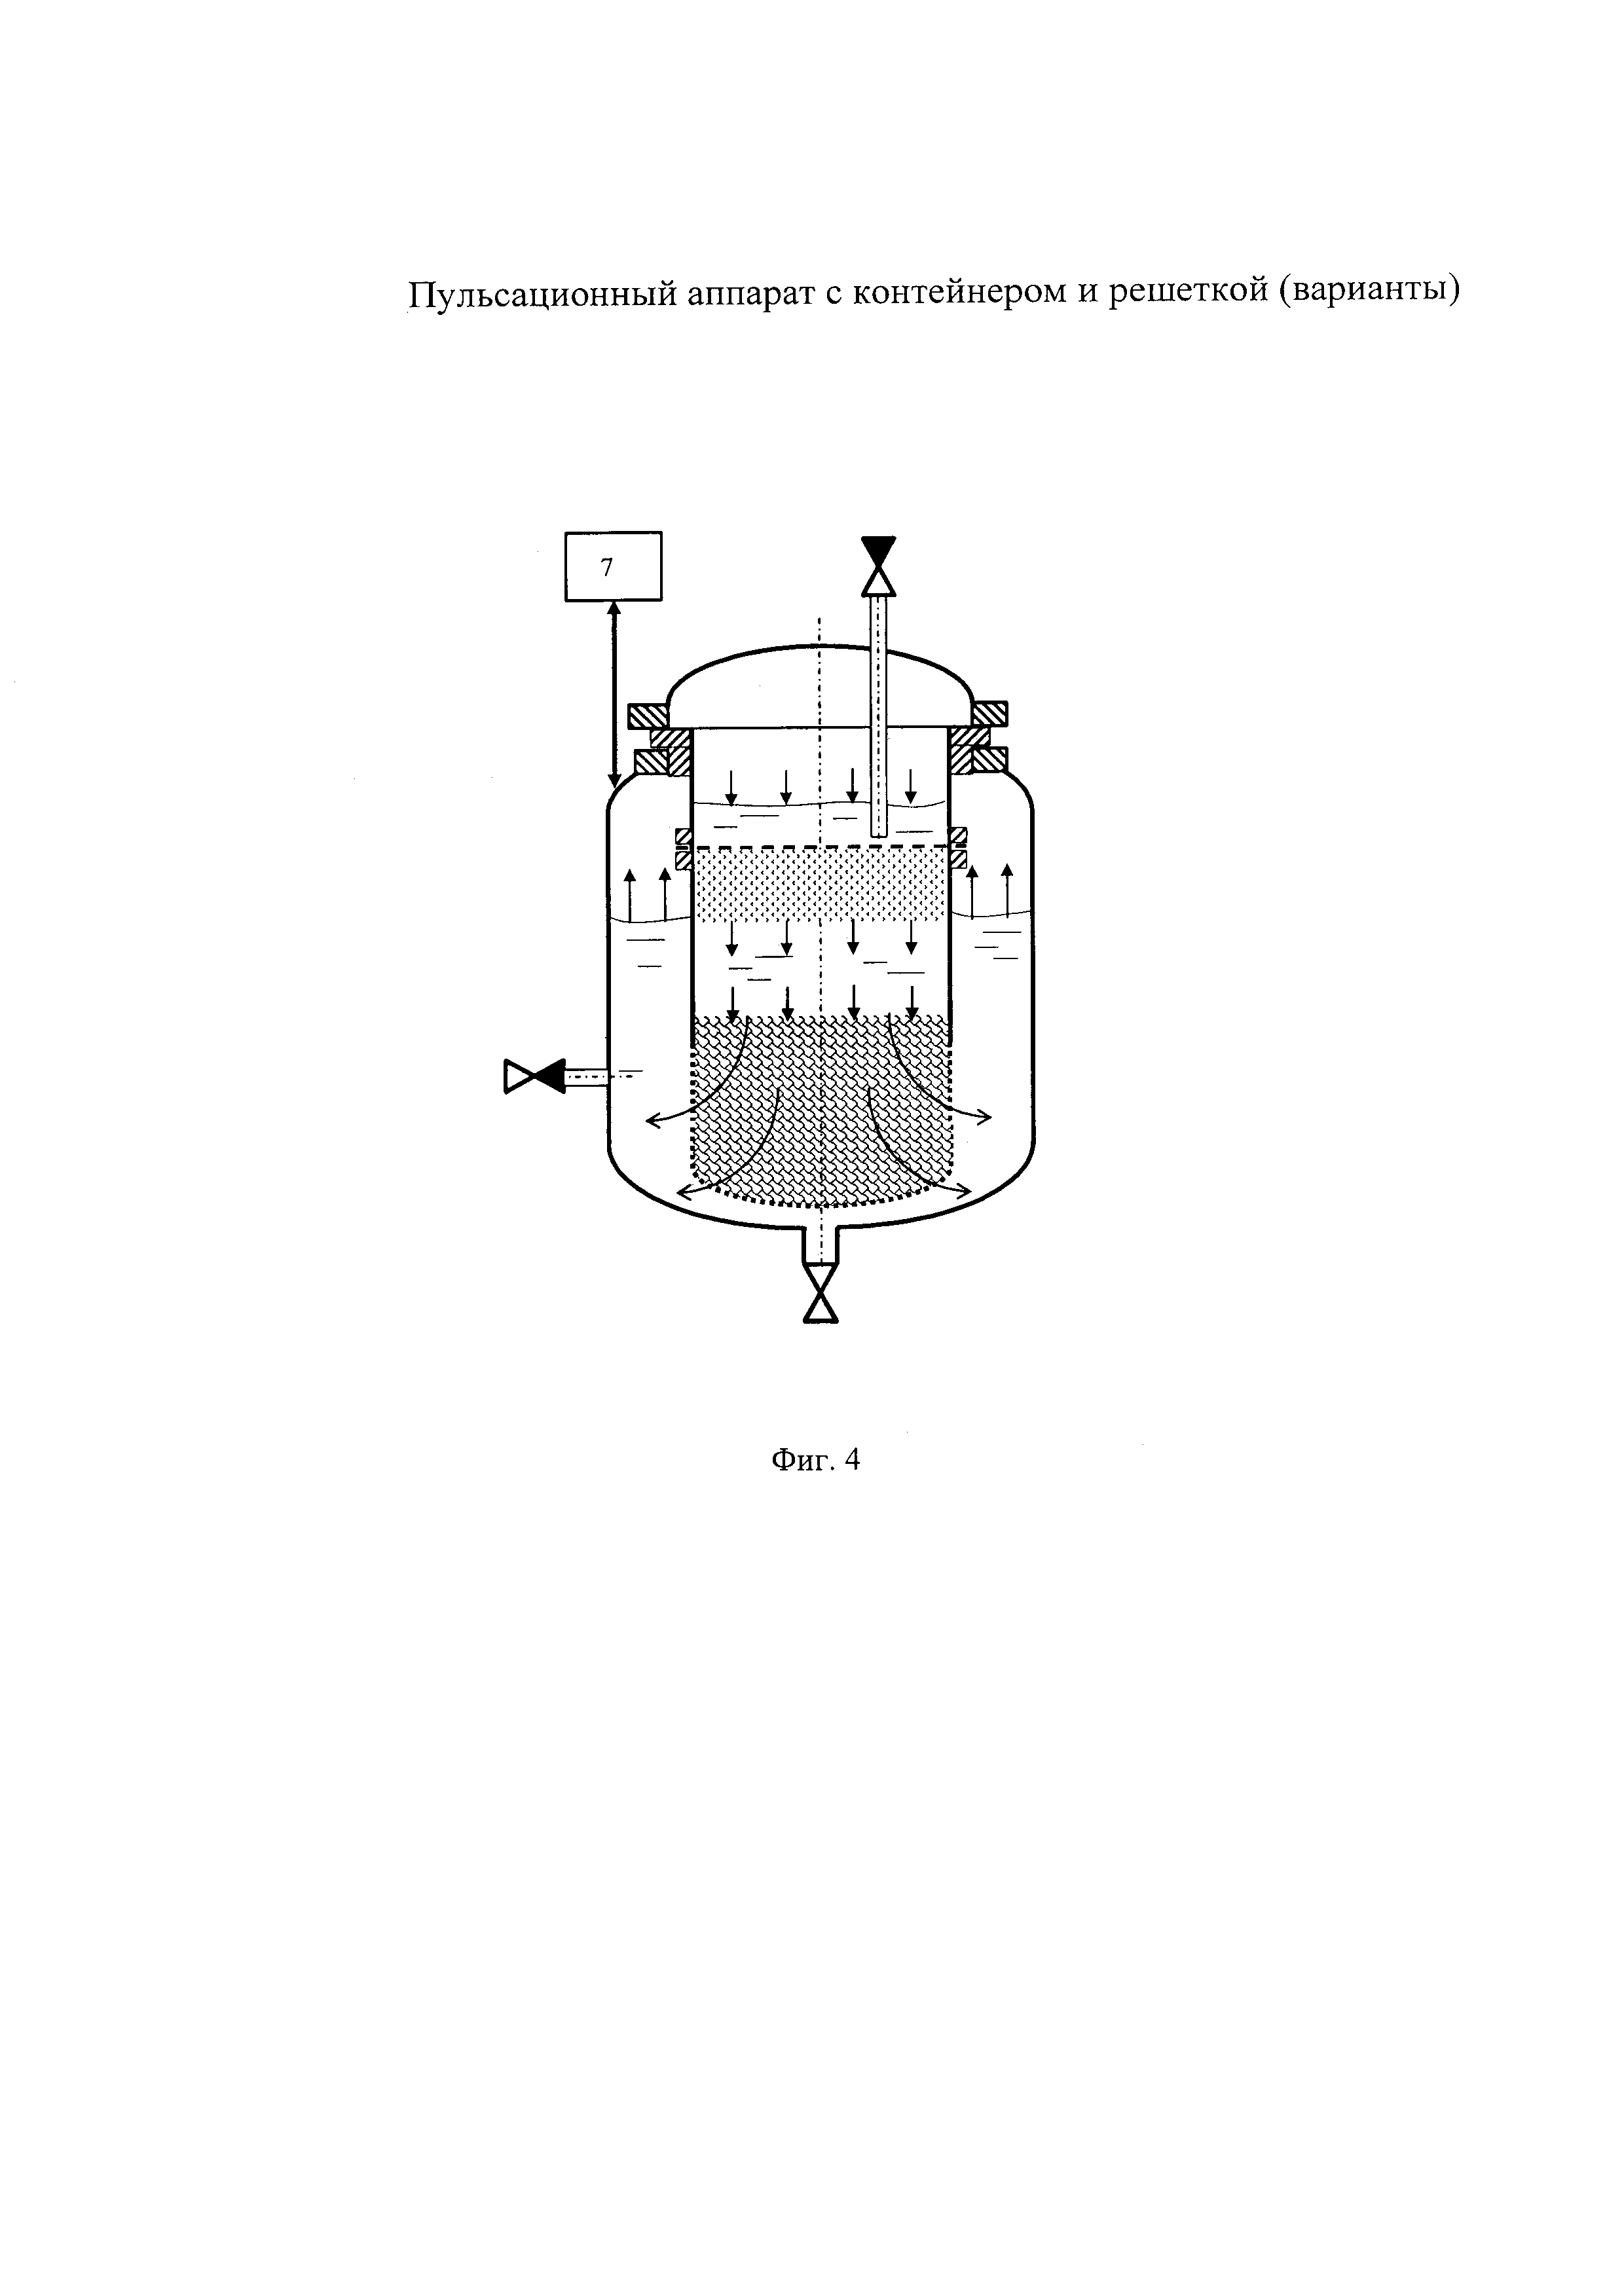 Пульсационный аппарат с контейнером и решеткой (варианты)